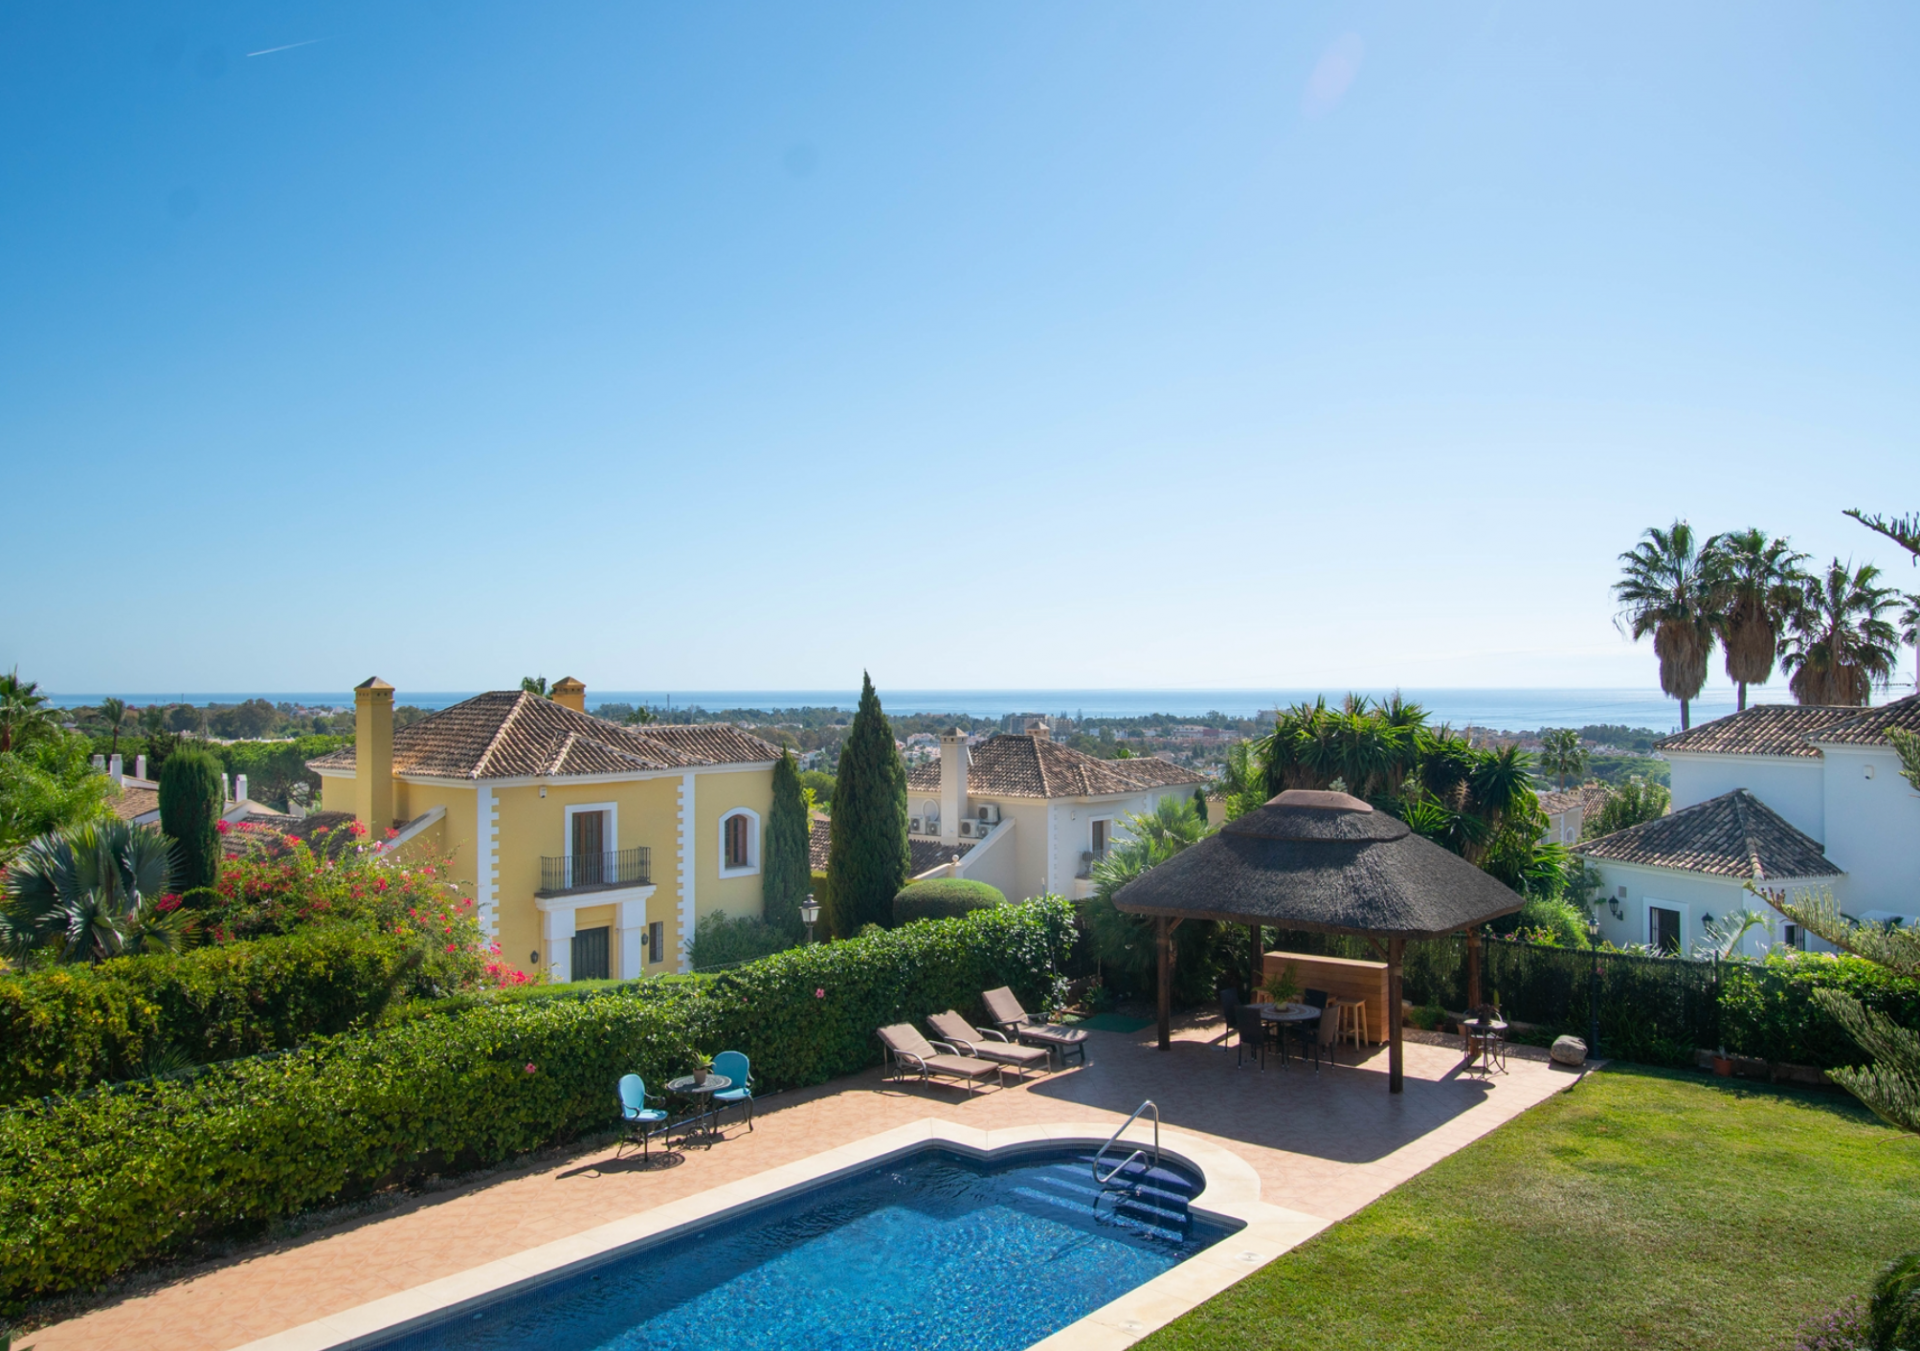 Elegante villa de estilo mediterráneo situada en El Paraíso disfrutando de maravillosas vistas al mar